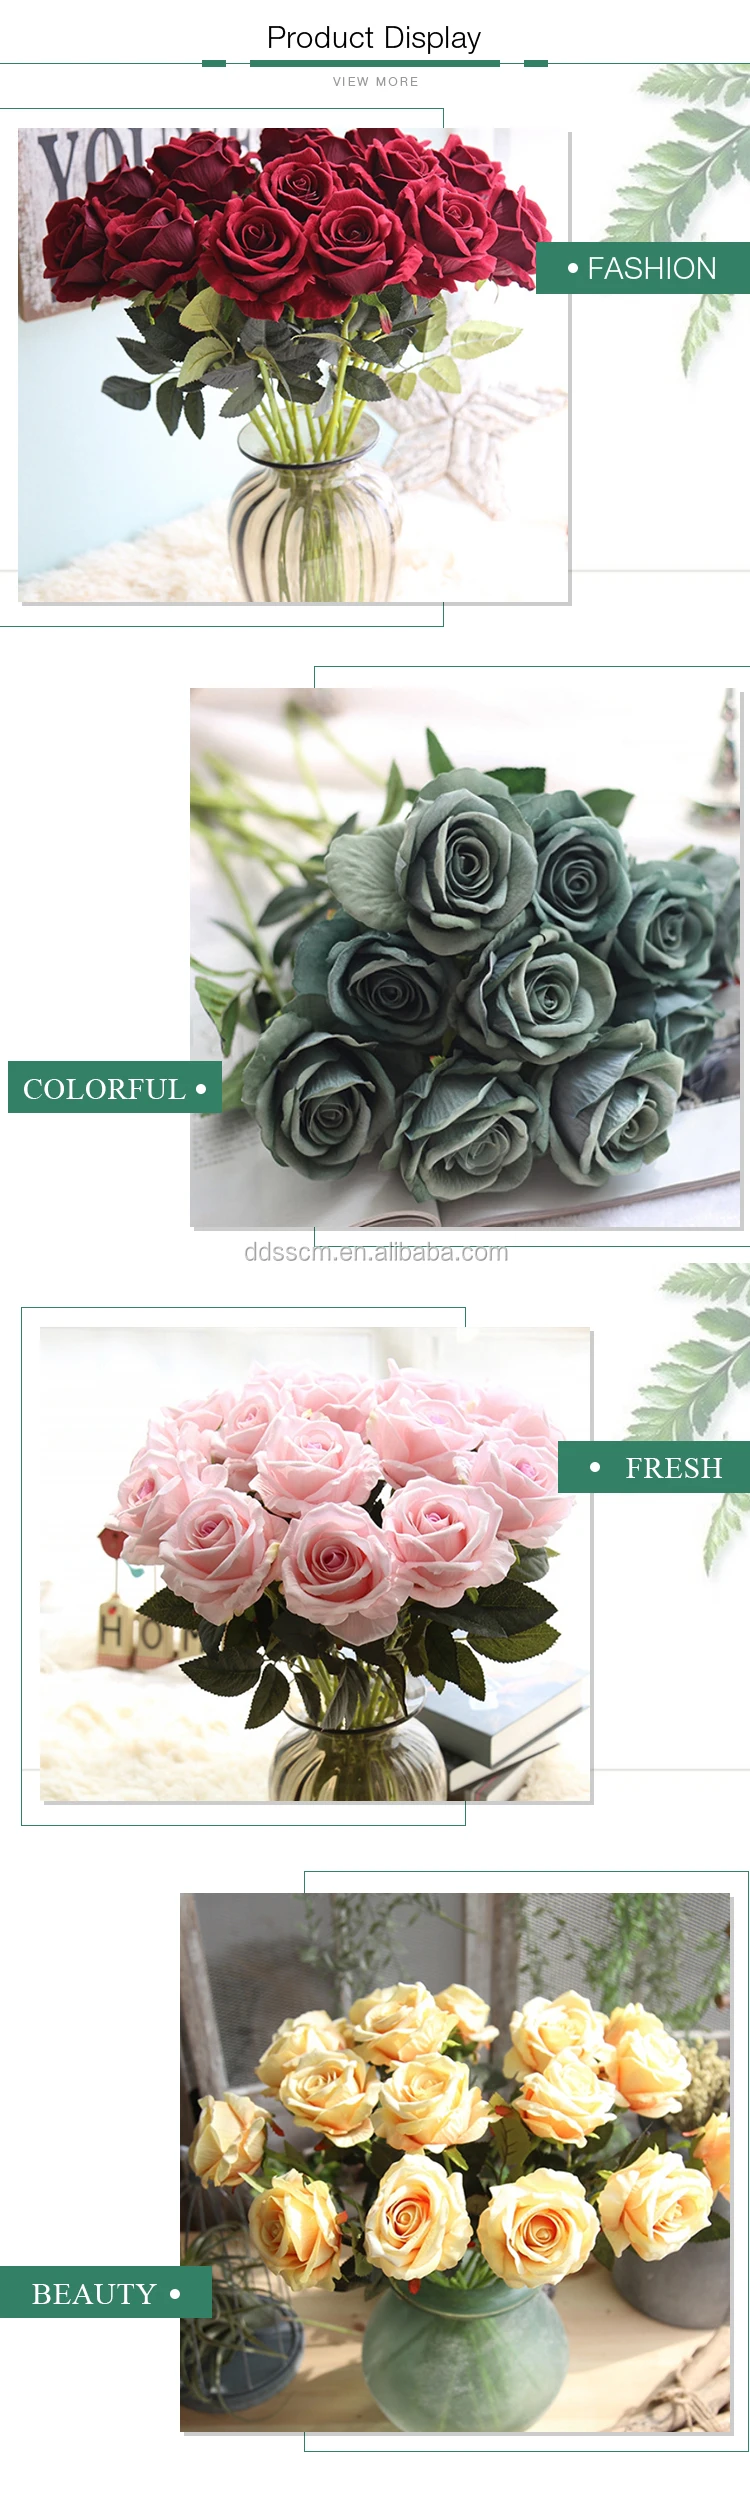 Flores De Decoración De Látex De Tacto Real Rosas Preservadas Negras - Buy  Flores Decorativas,Rosas,Látex De Tacto Real Product on 